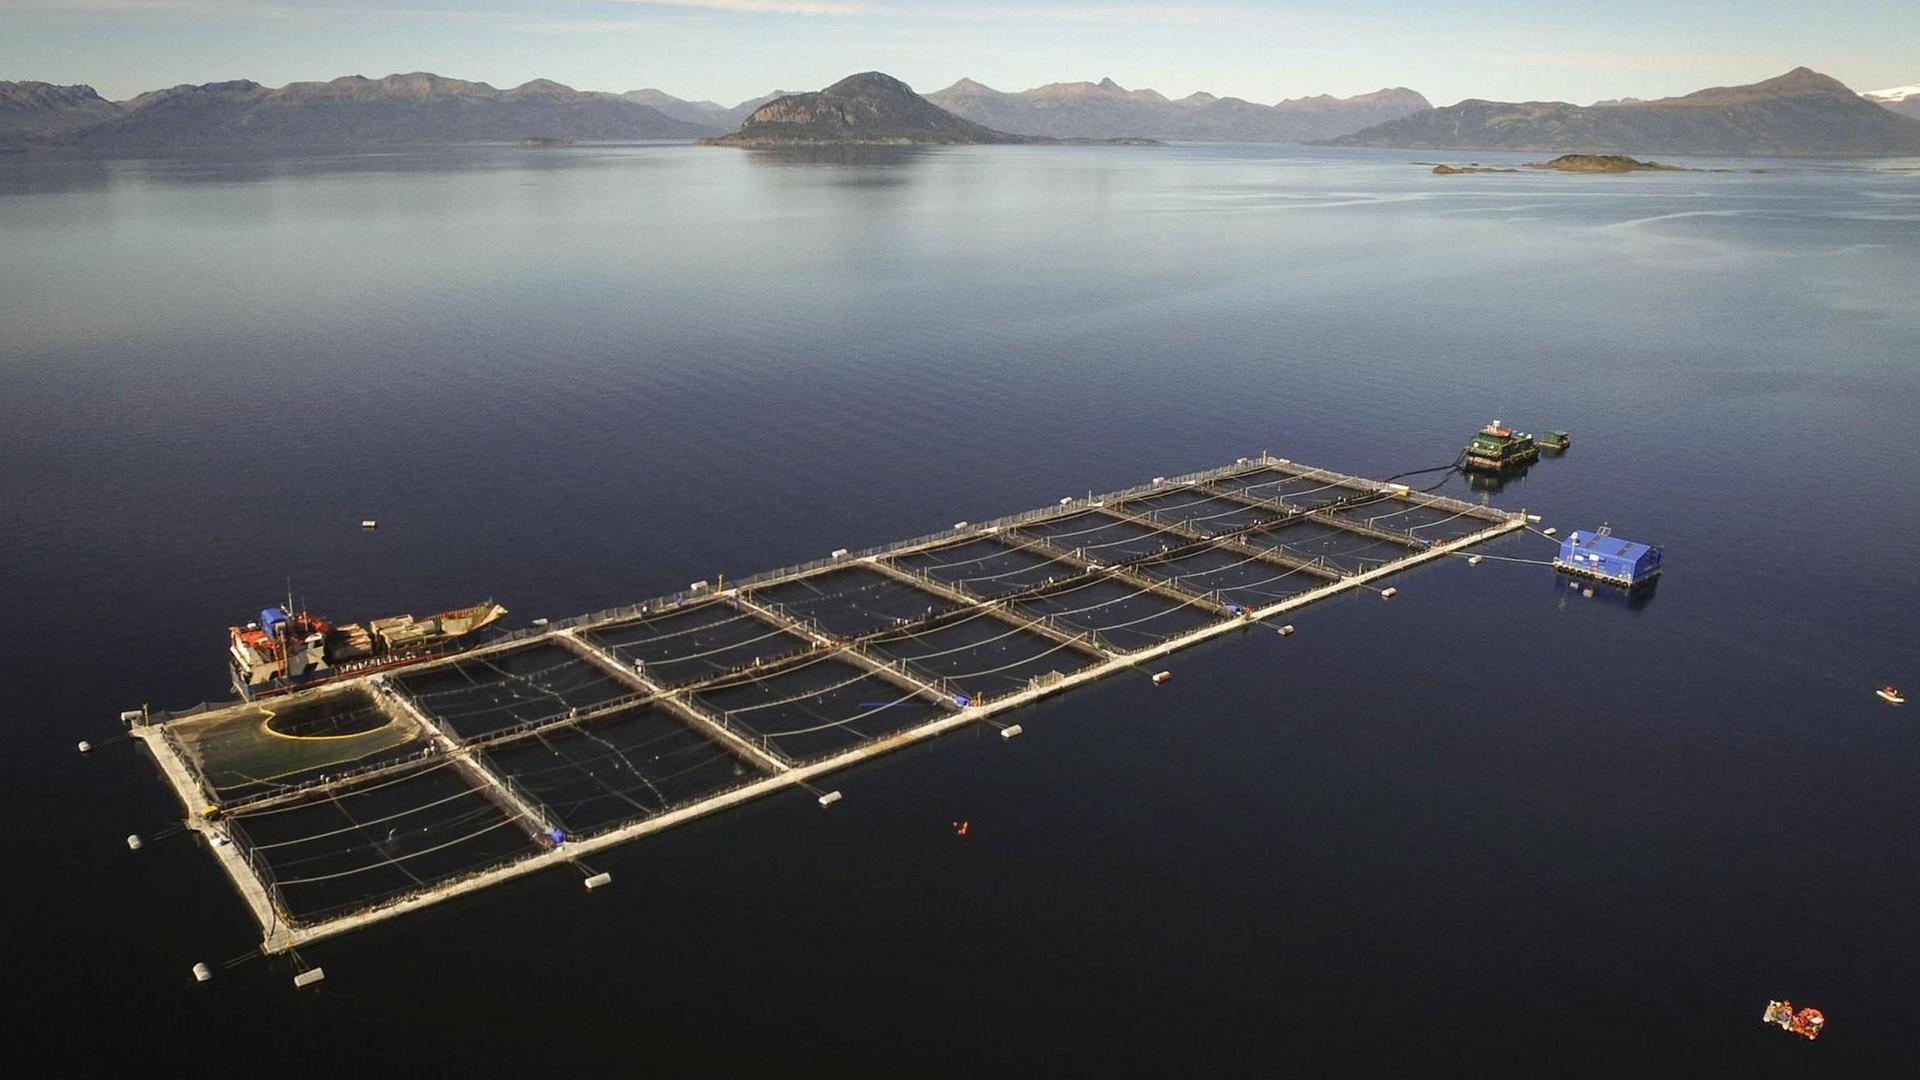 Eine Aquakulturfarm in Chile zur Lachszucht. Auf dem offenen Meer sind quadratische Netze im Wasser für die Lachse.